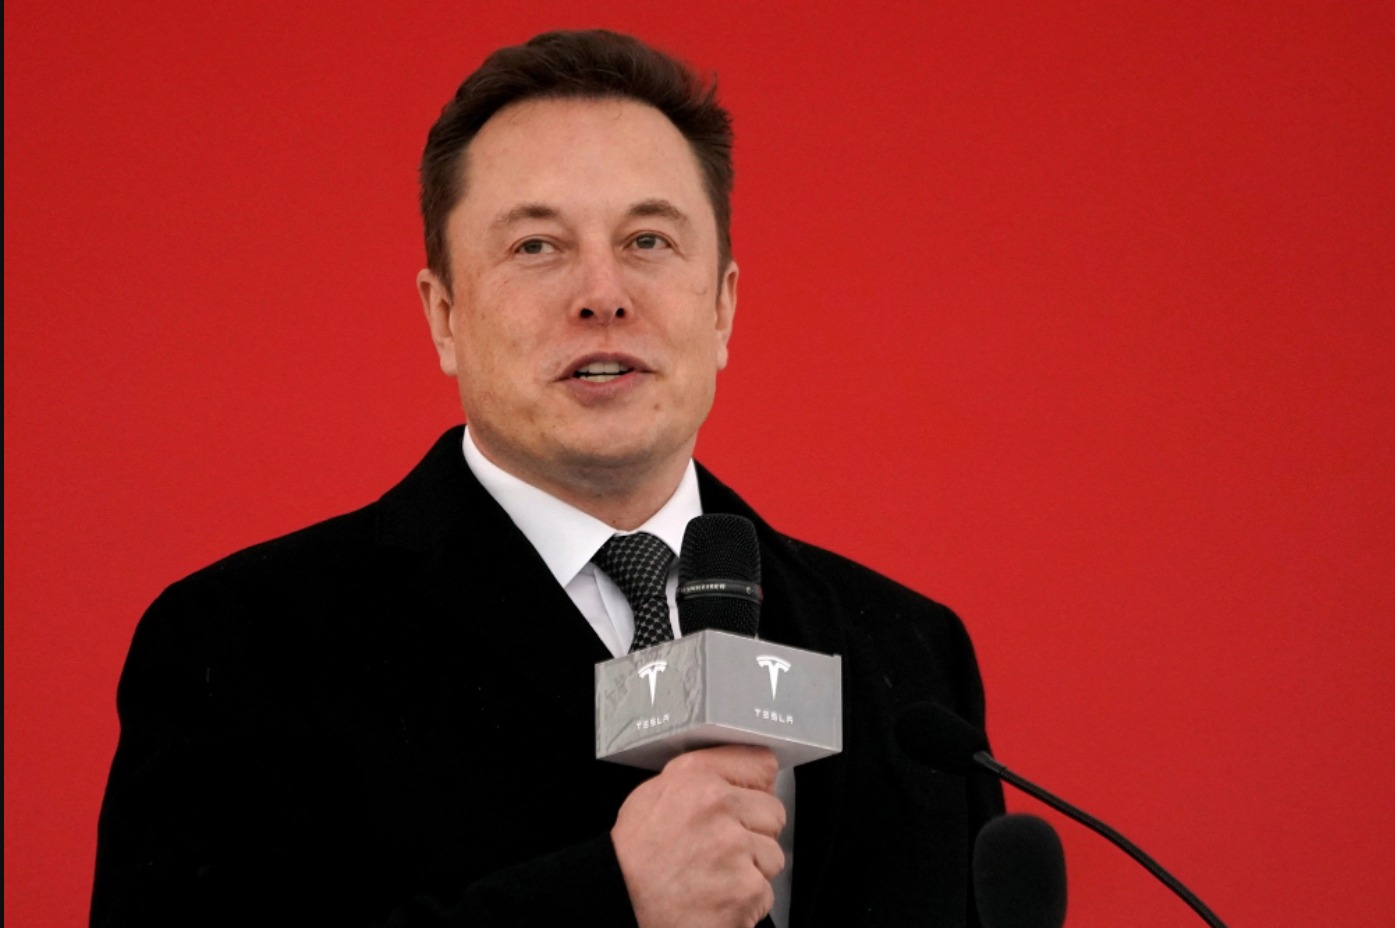 Elon Musk ha detto che potrebbe morire “in circostanze misteriose” in un tweet criptico